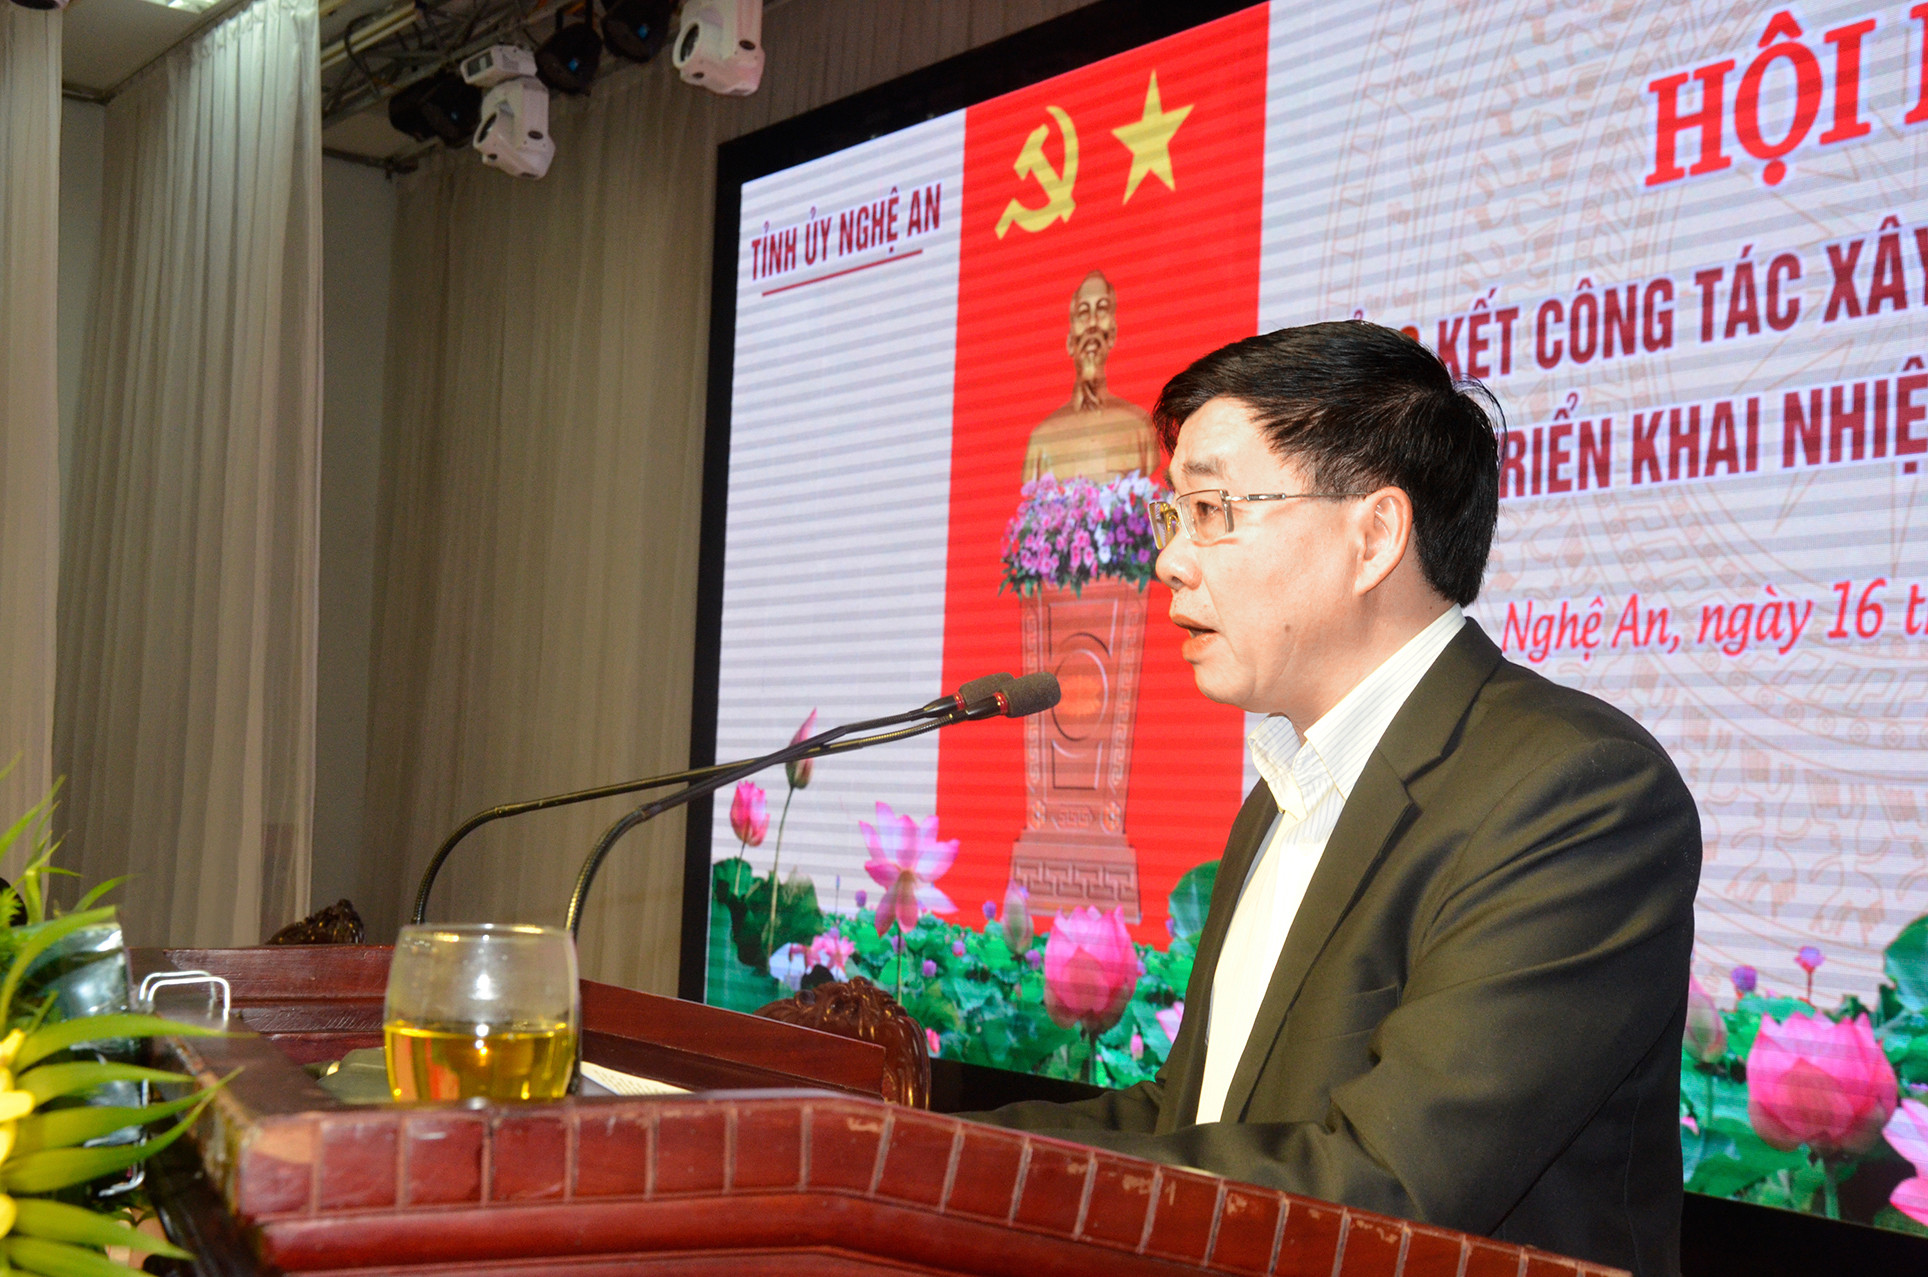 Phó Bí thư Tỉnh ủy Nguyễn Văn Thông báo cáo tổng kết công tác xây dựng Đảng năm 2019, triển khai nhiệm vụ năm 2020. Ảnh: Thanh Lê